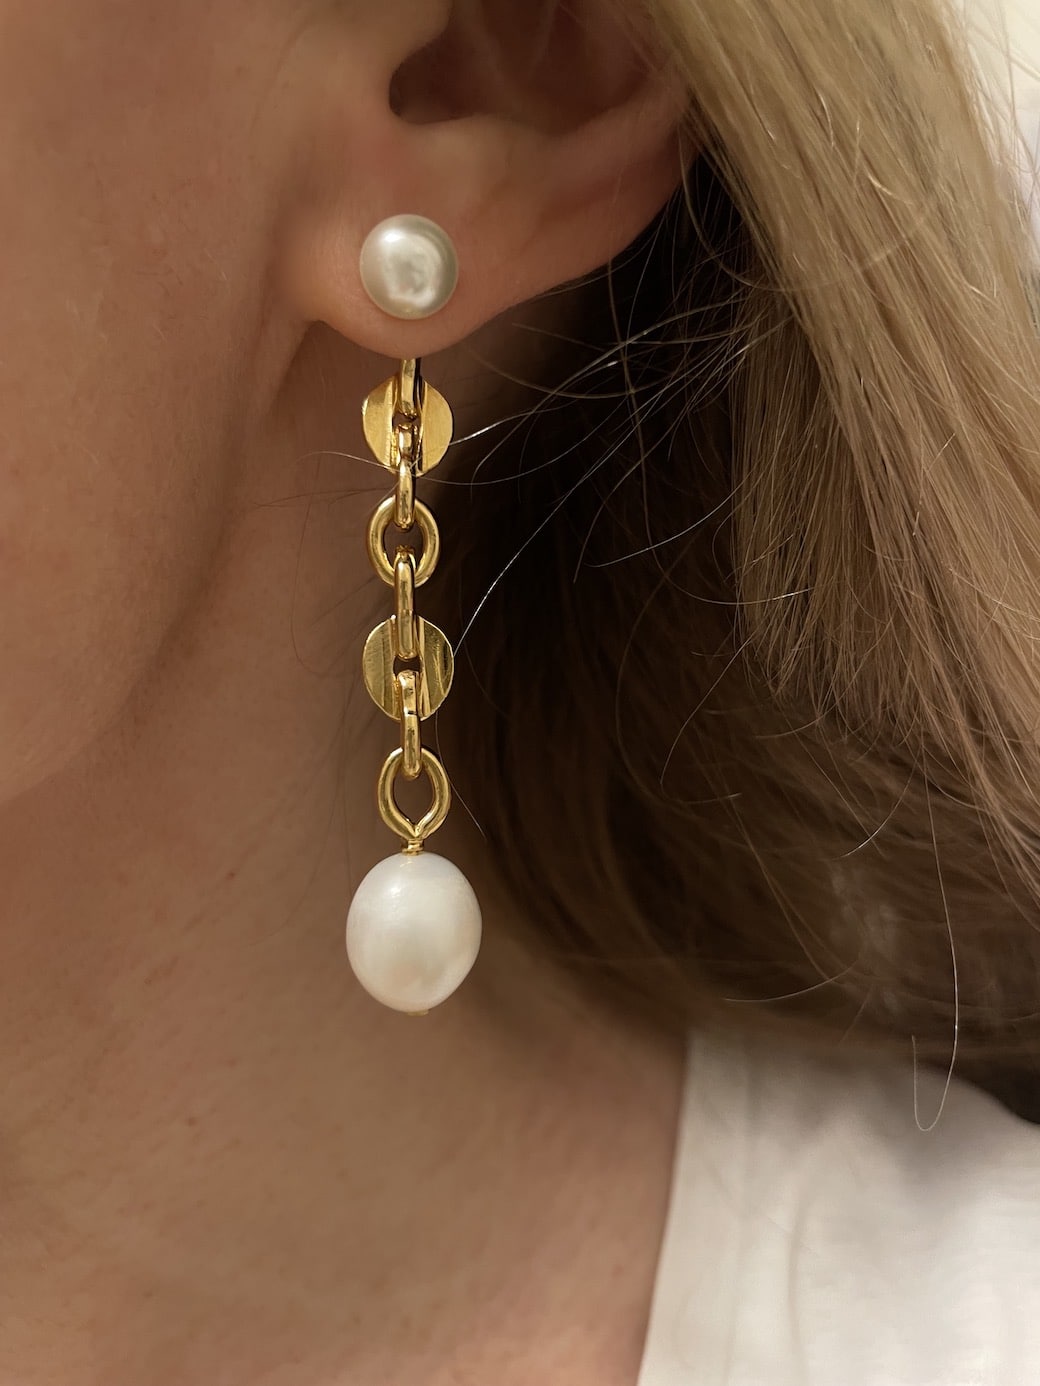 Boucles d'oreilles Caprice Perles by Sande.